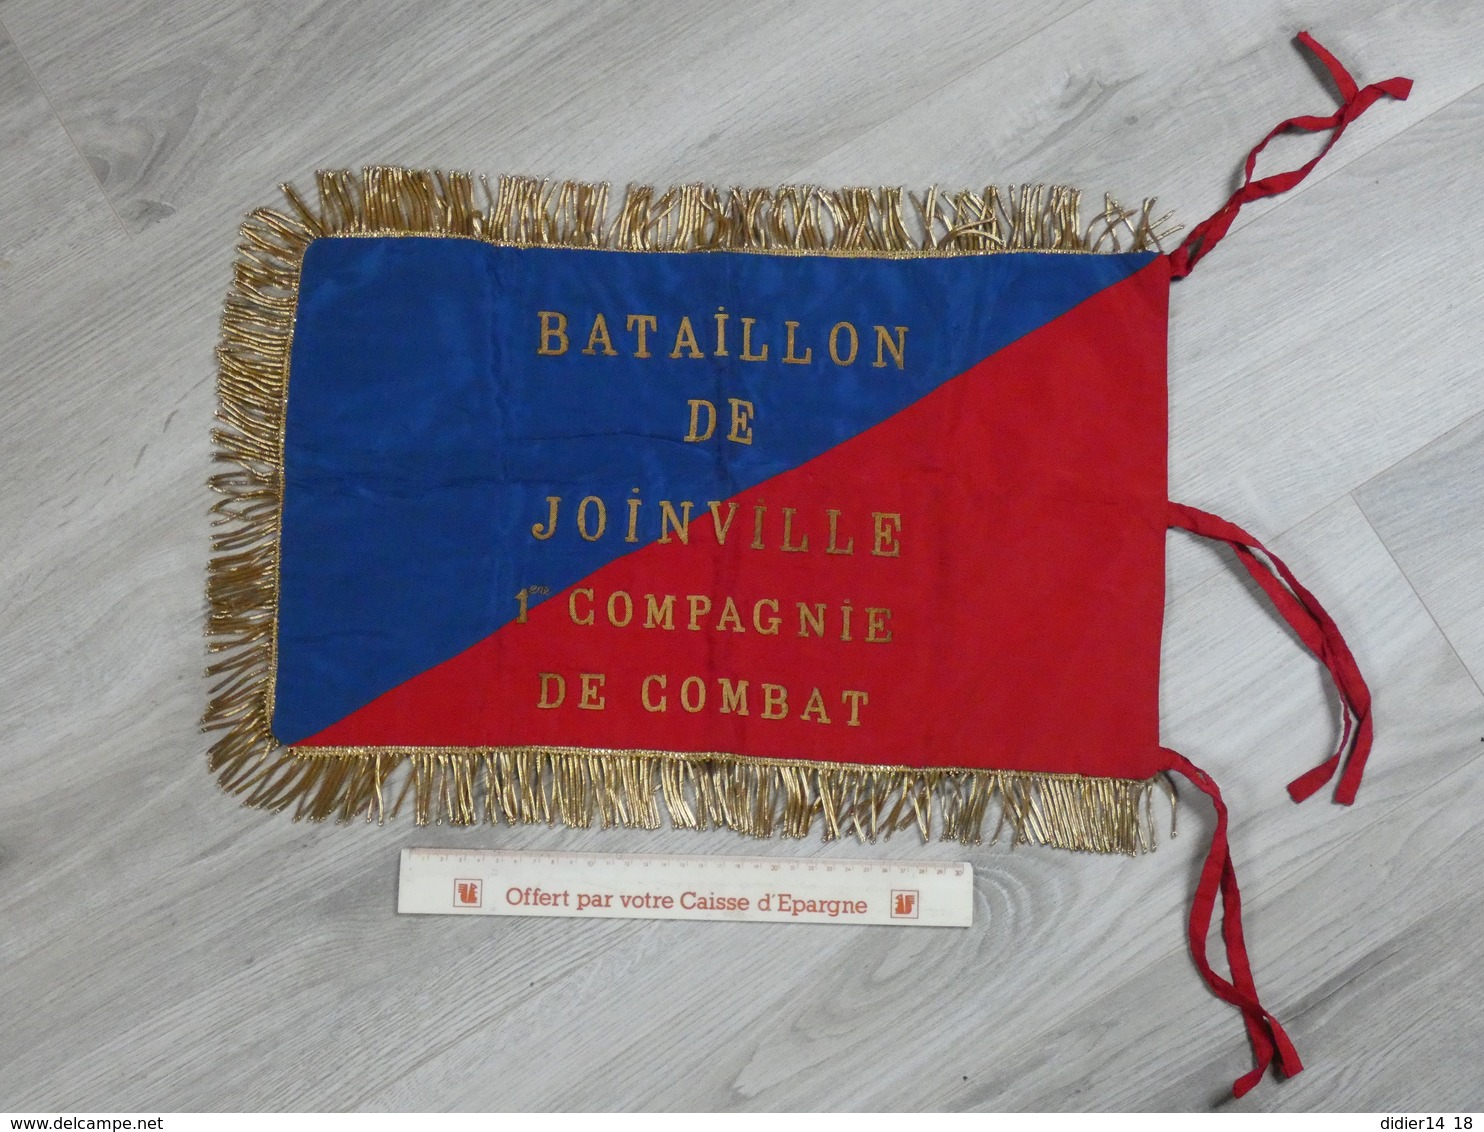 FANION BATAILLON DE JOINVILLE. 1ére Cie DE COMBAT. BRODE CANETILLE EXCELLENT ETAT. 50X30CM - Bandiere